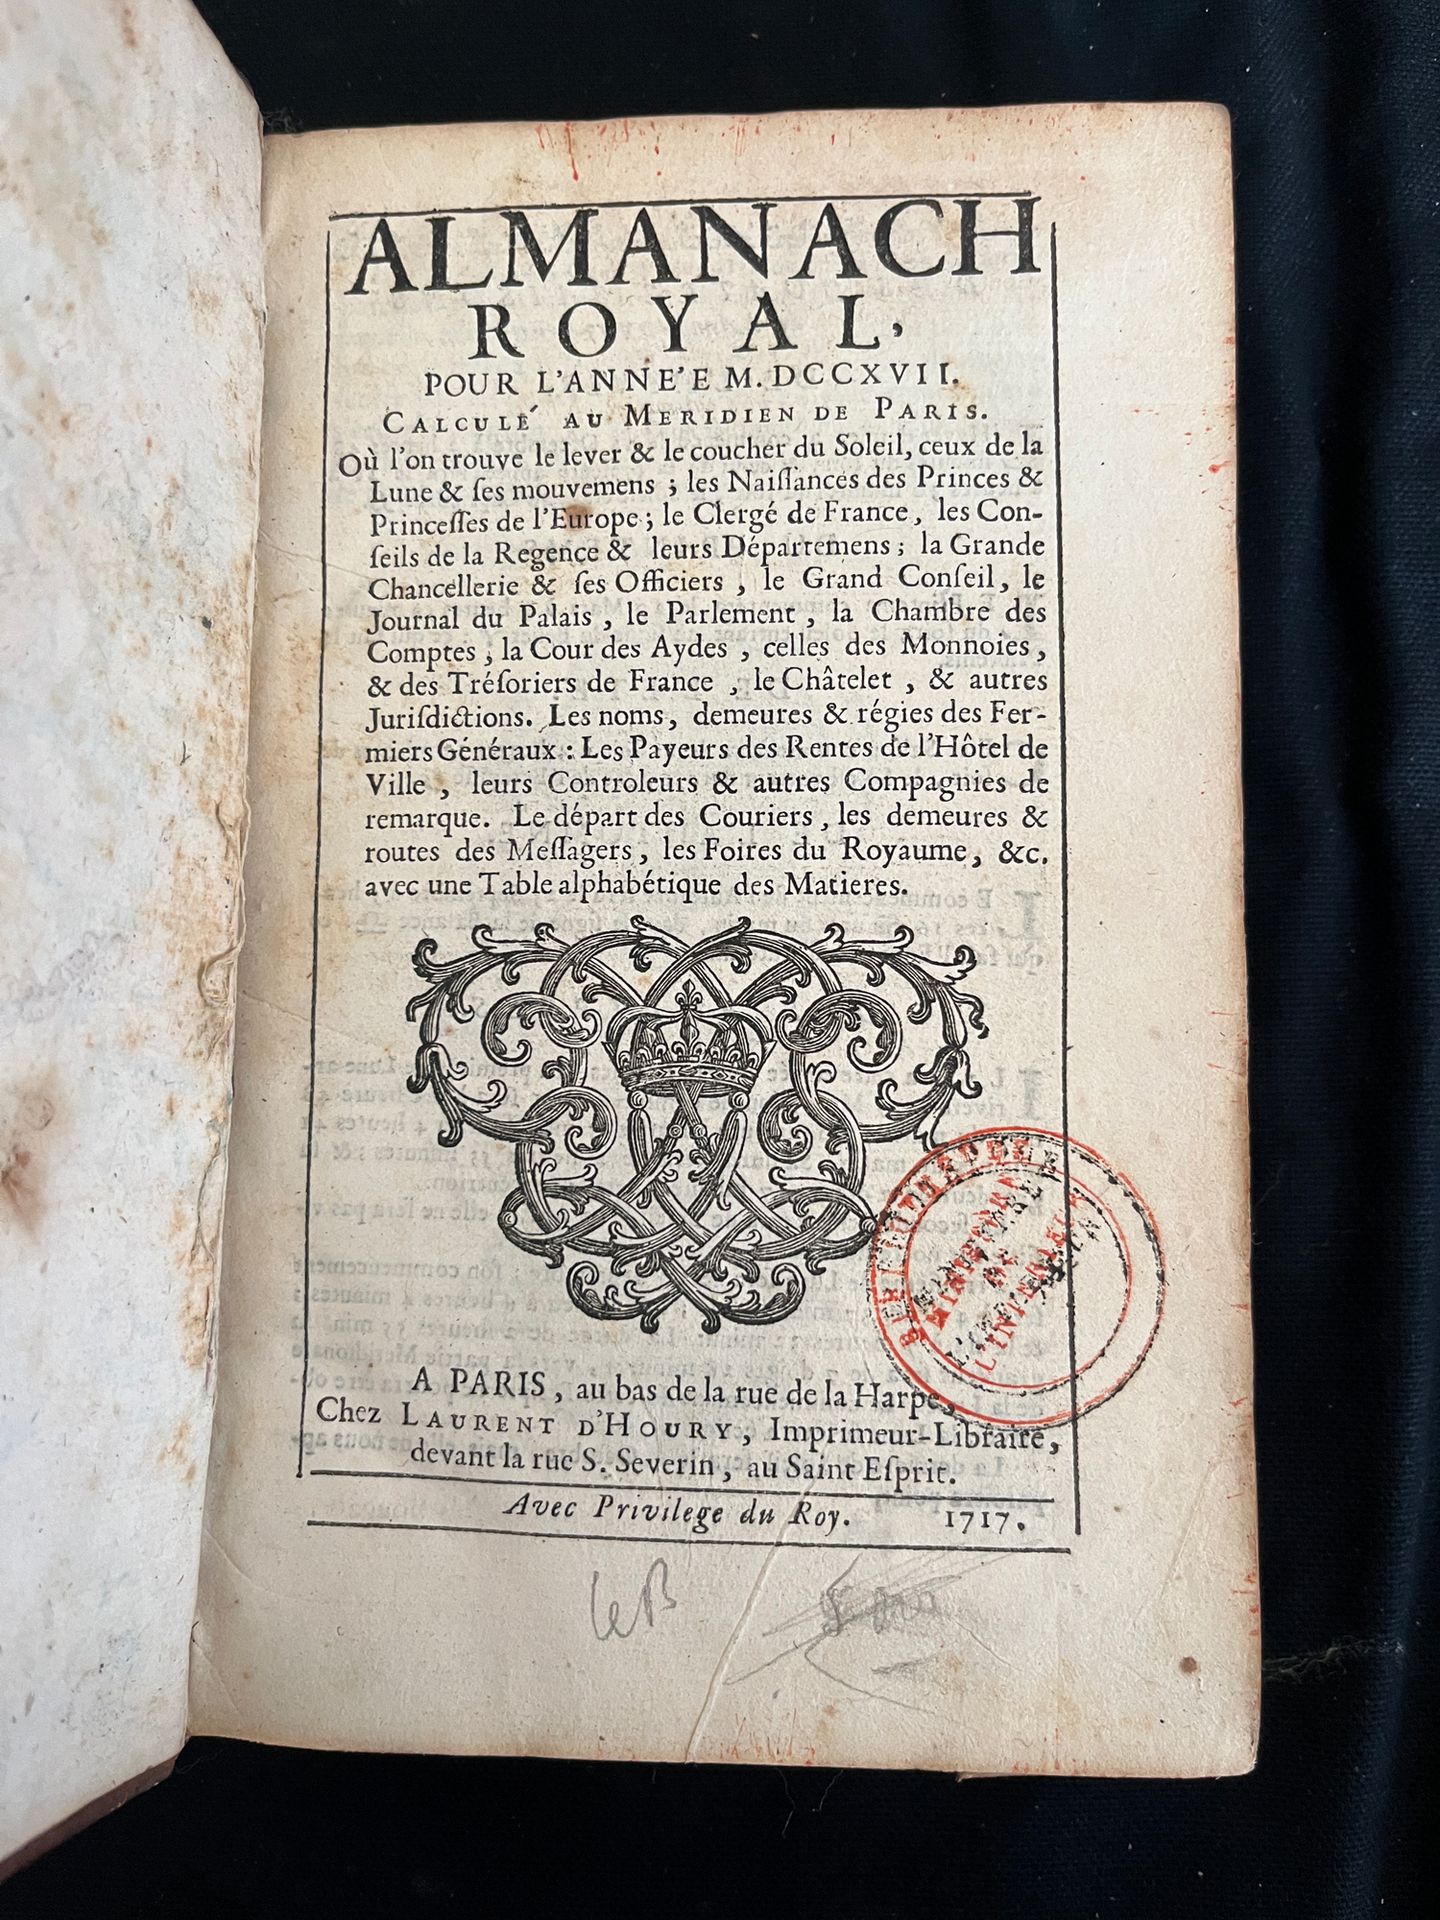 Null [ALMANACH]
Almanach royal pour l'an MDCCXVII. Paris chez Laurent d'Houry au&hellip;